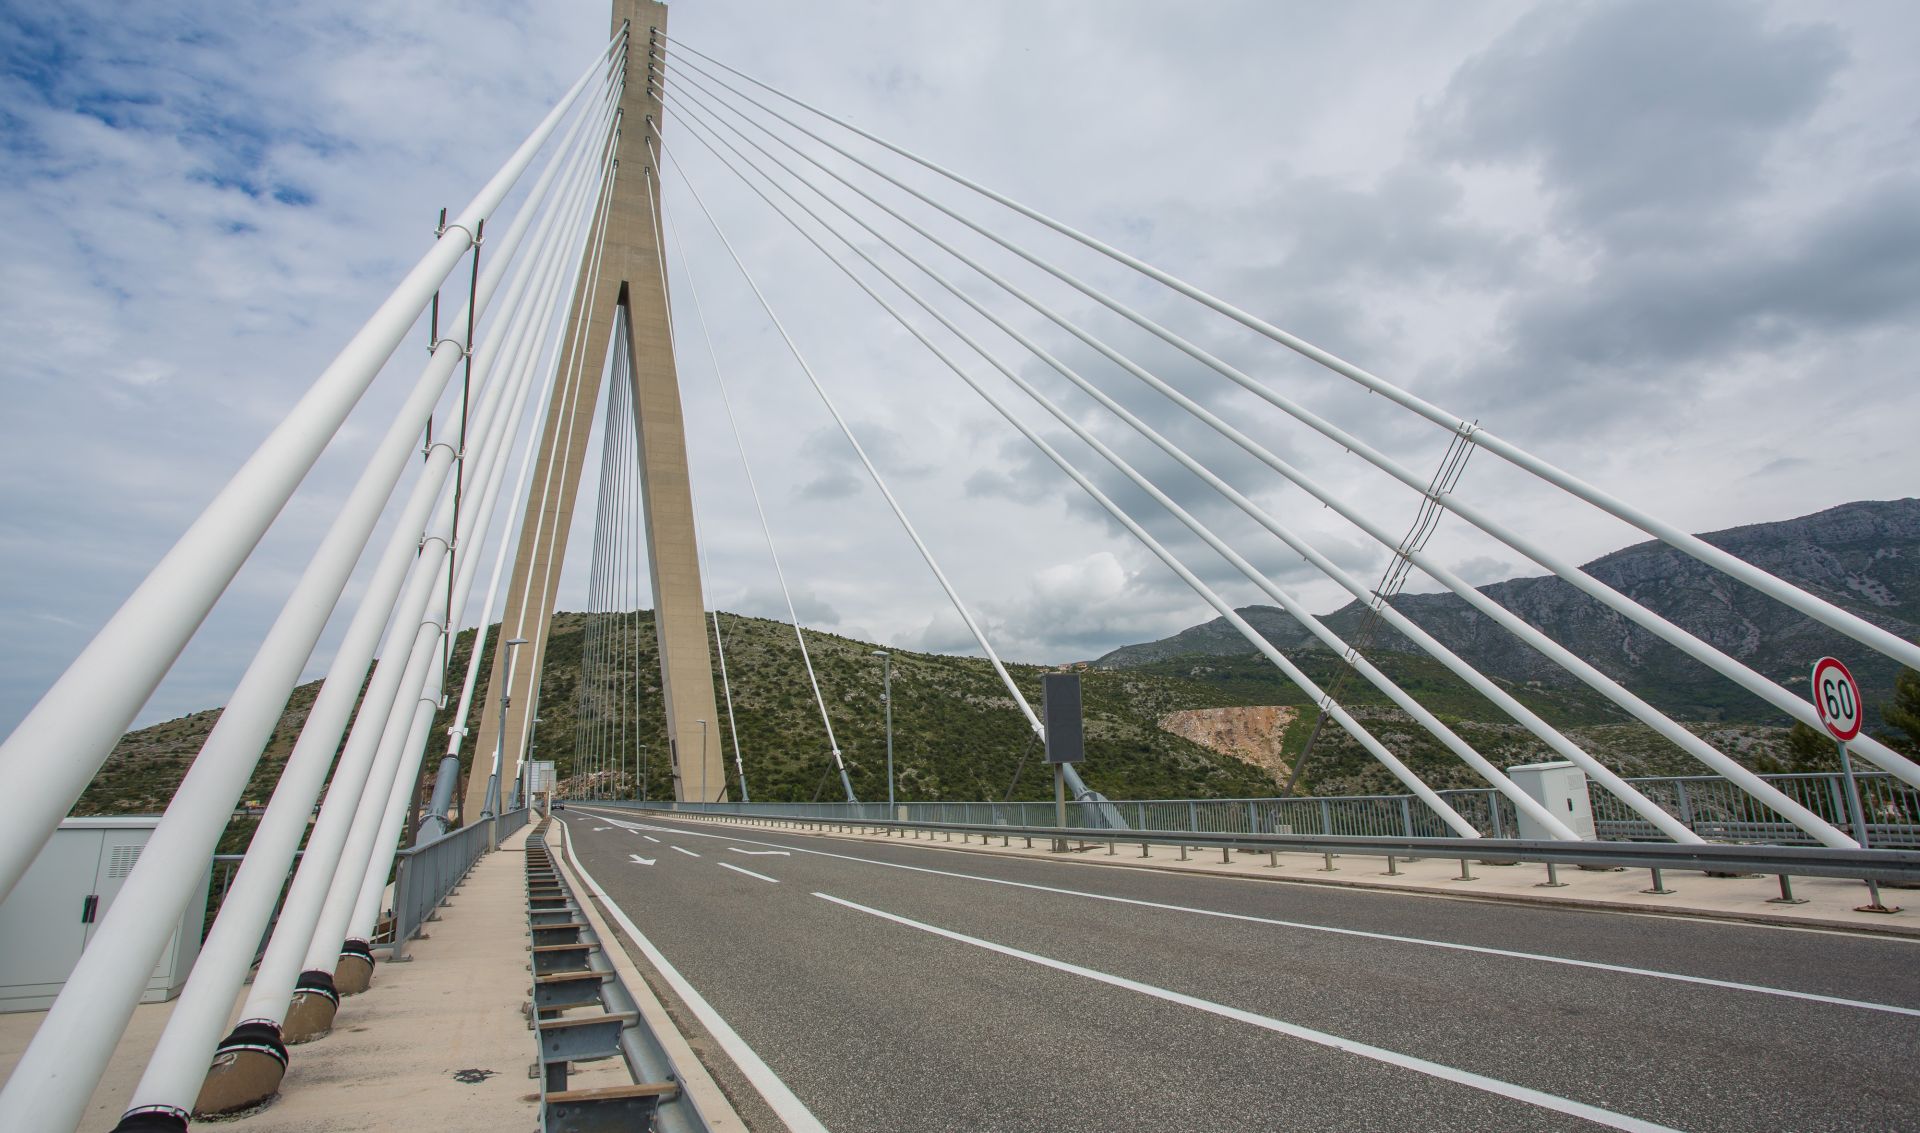 27.04.2014., Dubrovnik - Most dr. Franje Tudjmana ili Most Dubrovnik povezuje dvije obale zaljeva Rijeke dubrovacke. 
Photo: Grgo Jelavic/PIXSELL